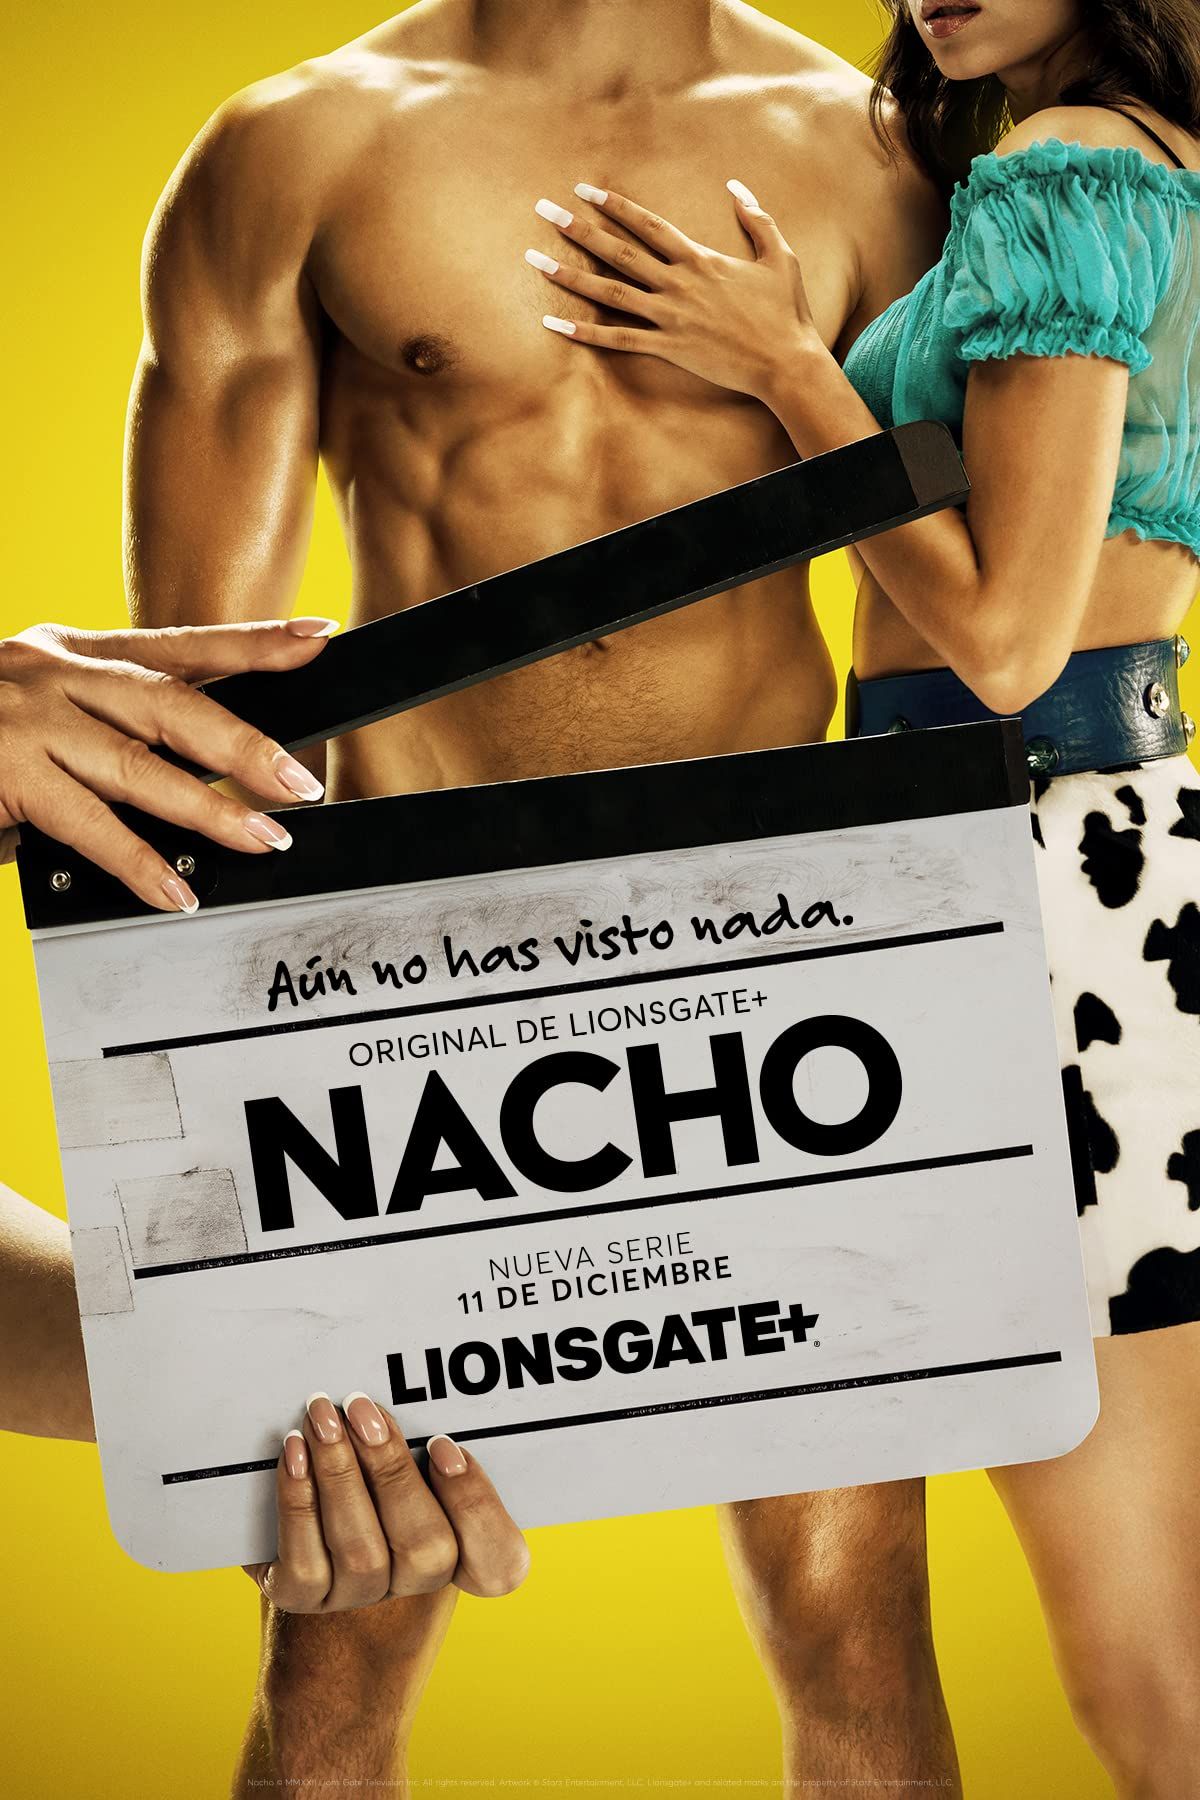 [18+] Nacho (2023) S01E01 Spanish Series HDRip download full movie